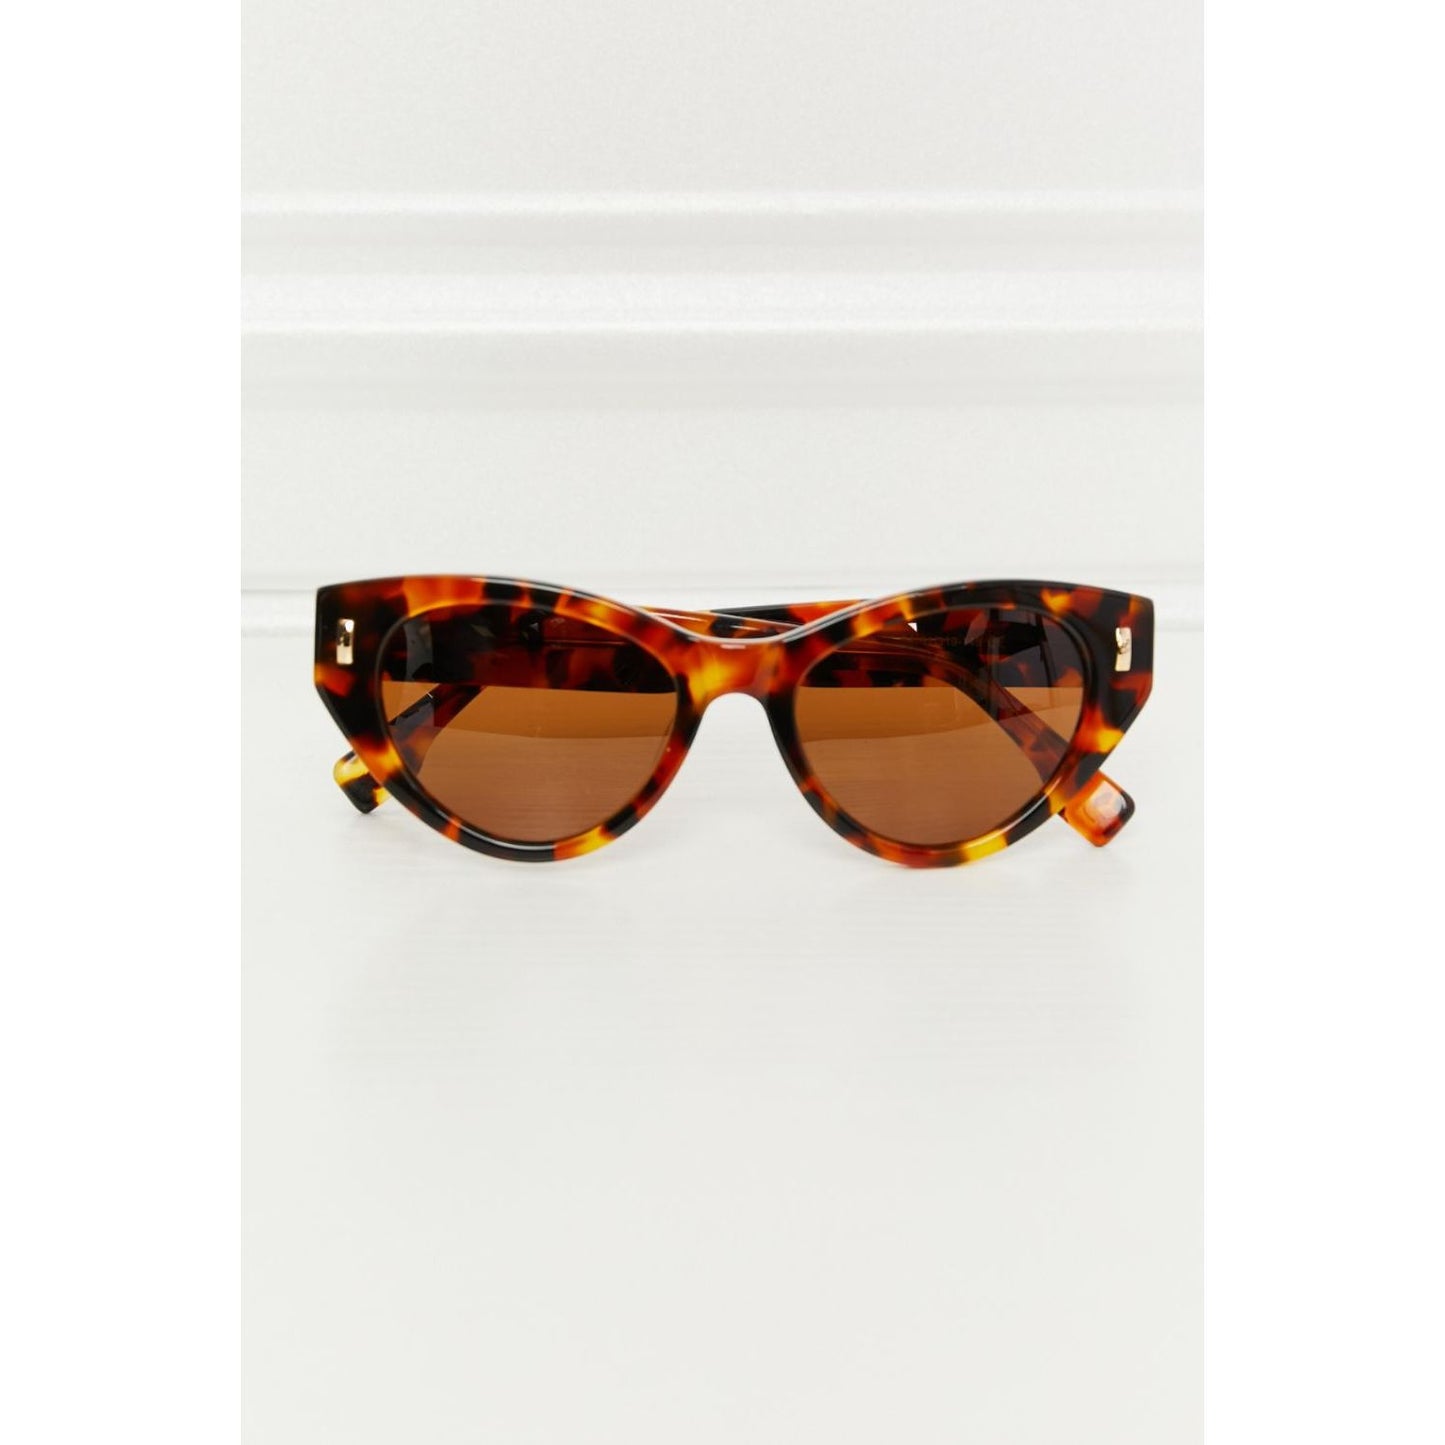 Tortoiseshell Acetate Frame Sunglasses - TiffanyzKlozet